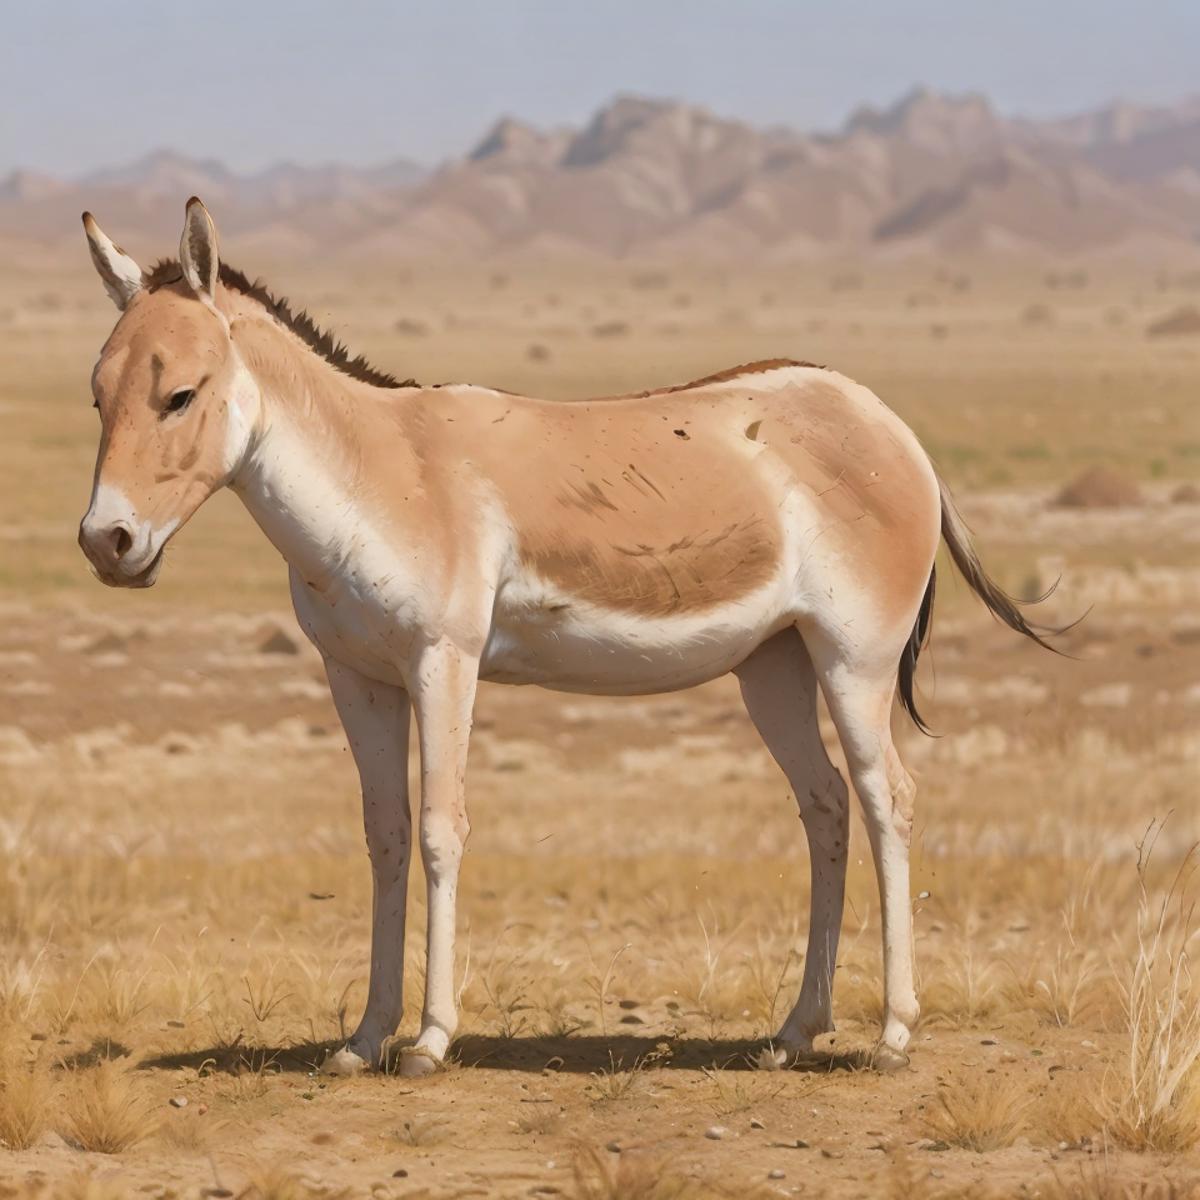 藏野驢 | 藏野驴 | རྐྱང་། | Equus Kiang image by Oraculum